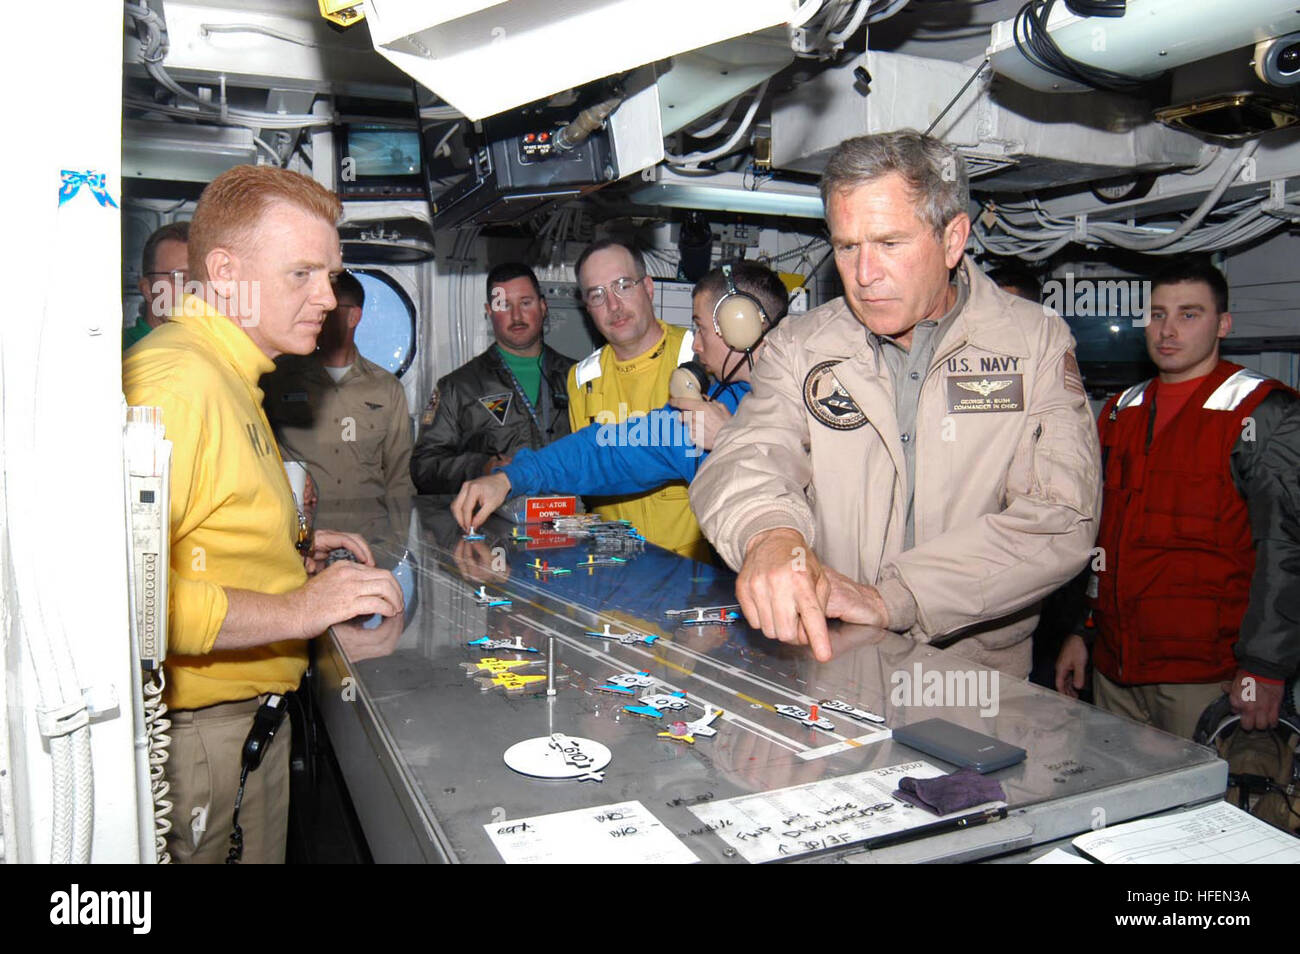 030501-N-6817C-237 de l'océan Pacifique (1 mai 2003) -- Le Président George W. Bush prend un tour de contrôle du poste de pilotage lors de sa visite à l'USS ABRAHAM LINCOLN (CVN 72). Le Président est d'une visite à bord du navire pour rencontrer les marins et s'adresser à la nation comme Lincoln se prépare à retourner d'un 10 mois de déploiement dans le golfe Persique dans le cadre de l'opération Iraqi Freedom. U.S. Navy photo by Photographer's Mate 3 classe Tyler J. Clements. (Libéré) US Navy 030501-N-6817C-237 Le Président George W. Bush prend un tour de contrôle du poste de pilotage lors de sa visite à l'USS ABRAHAM LINCOLN (CVN 72) Banque D'Images